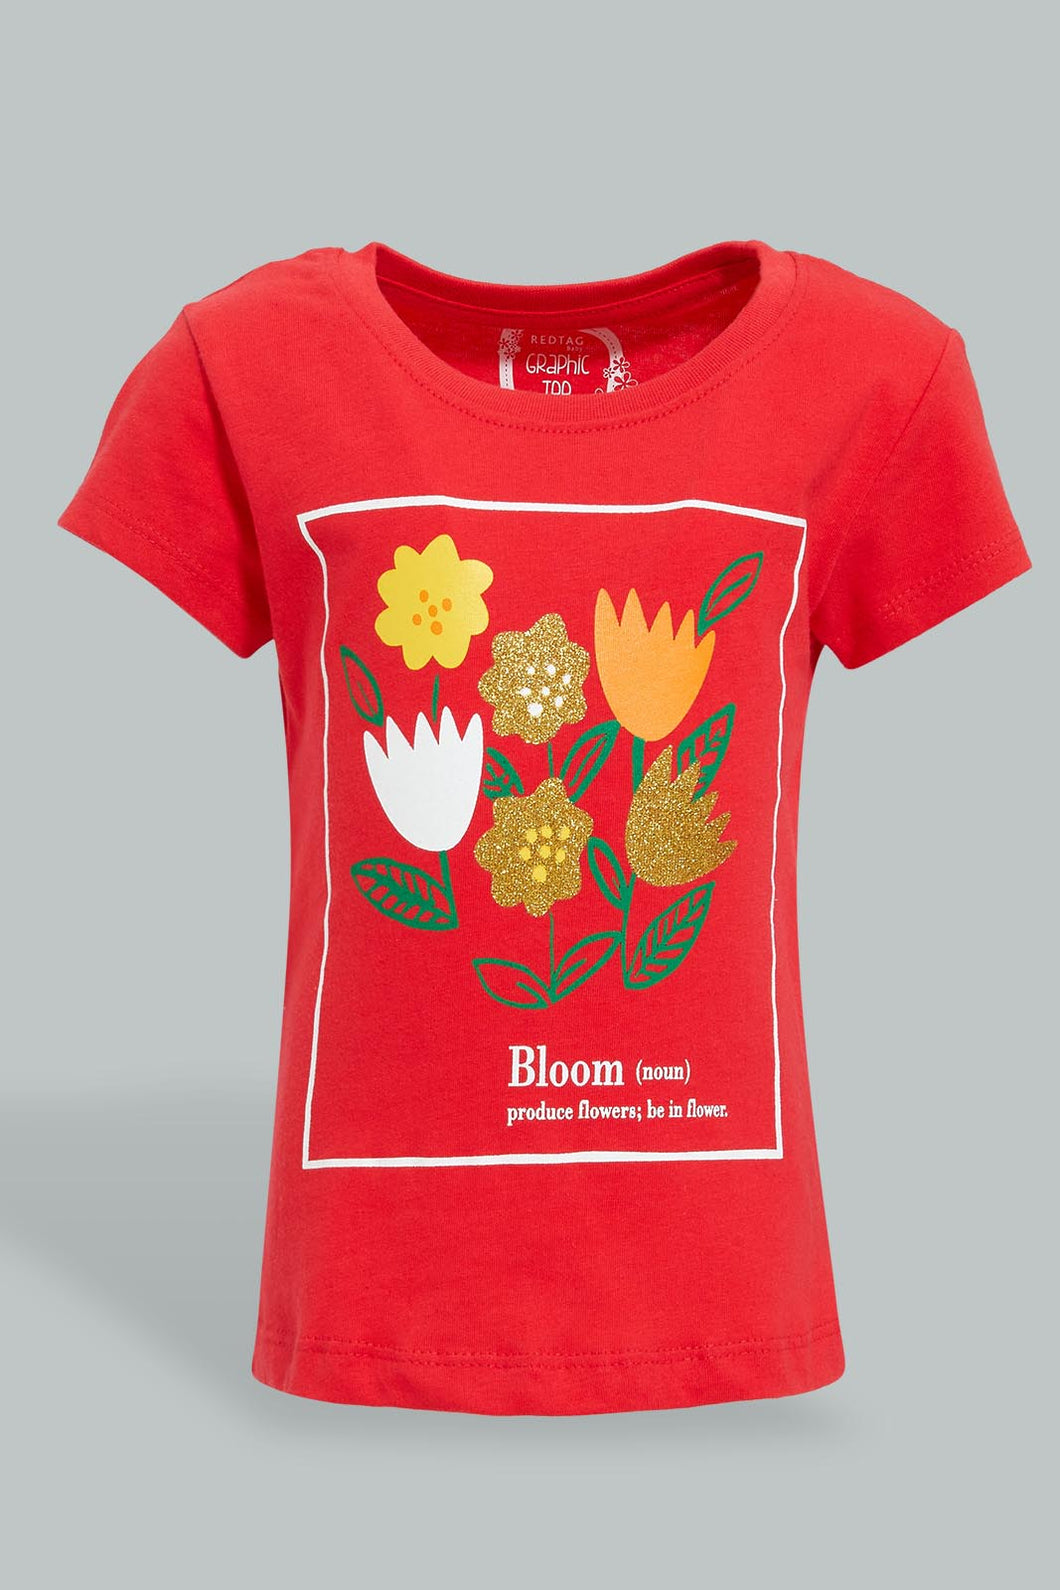 Red Graphic T-Shirt For Baby Girls تيشيرت مطبوع باللون الأحمر للبنات الرضع